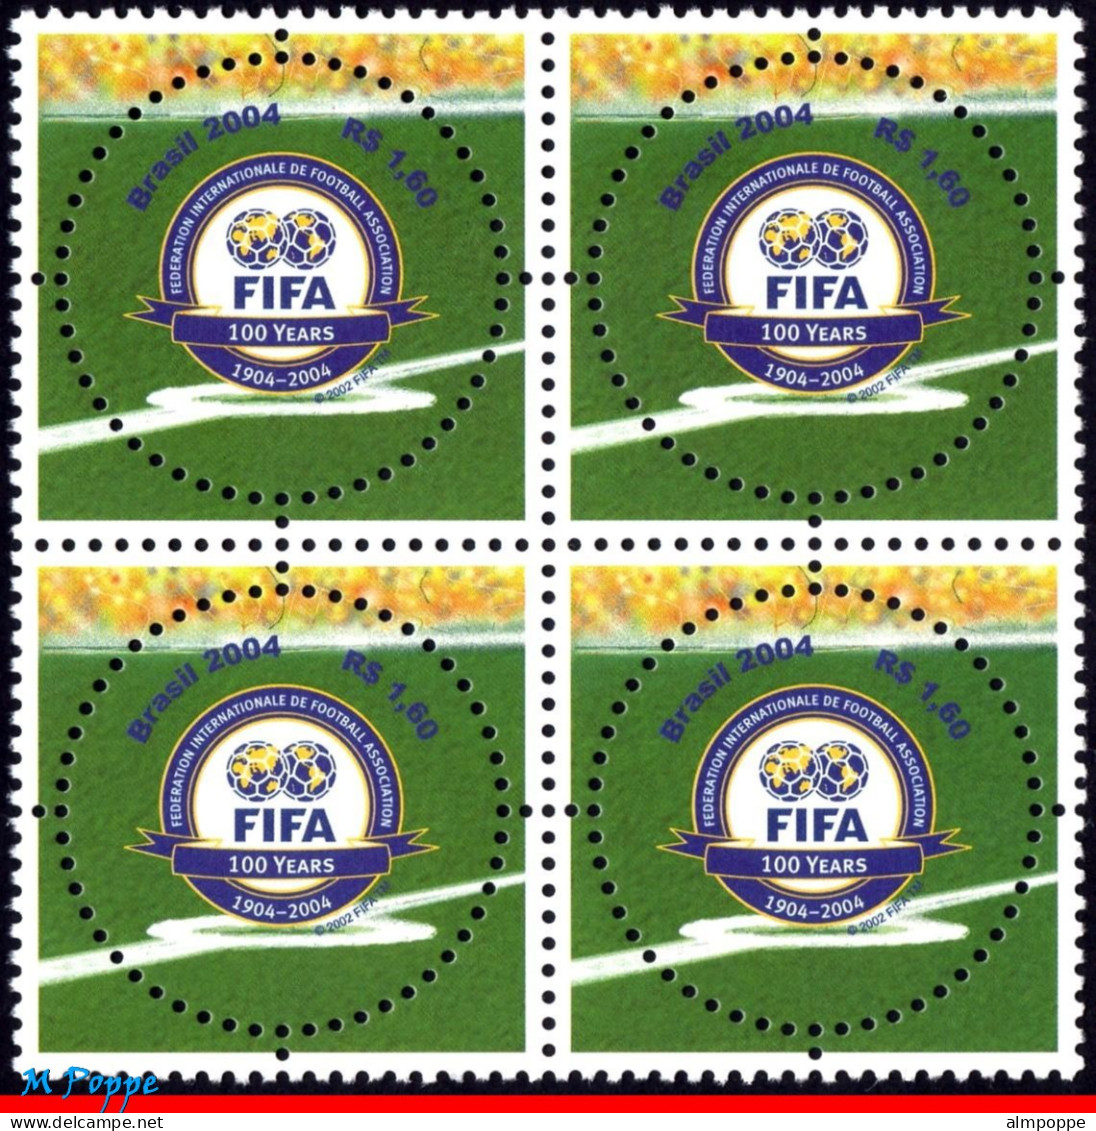 Ref. BR-2924-Q BRAZIL 2004 - FIFA CENTENARY, SPORT,MI# 3357, BLOCK MNH, FOOTBALL SOCCER 4V Sc# 2924 - Hojas Bloque